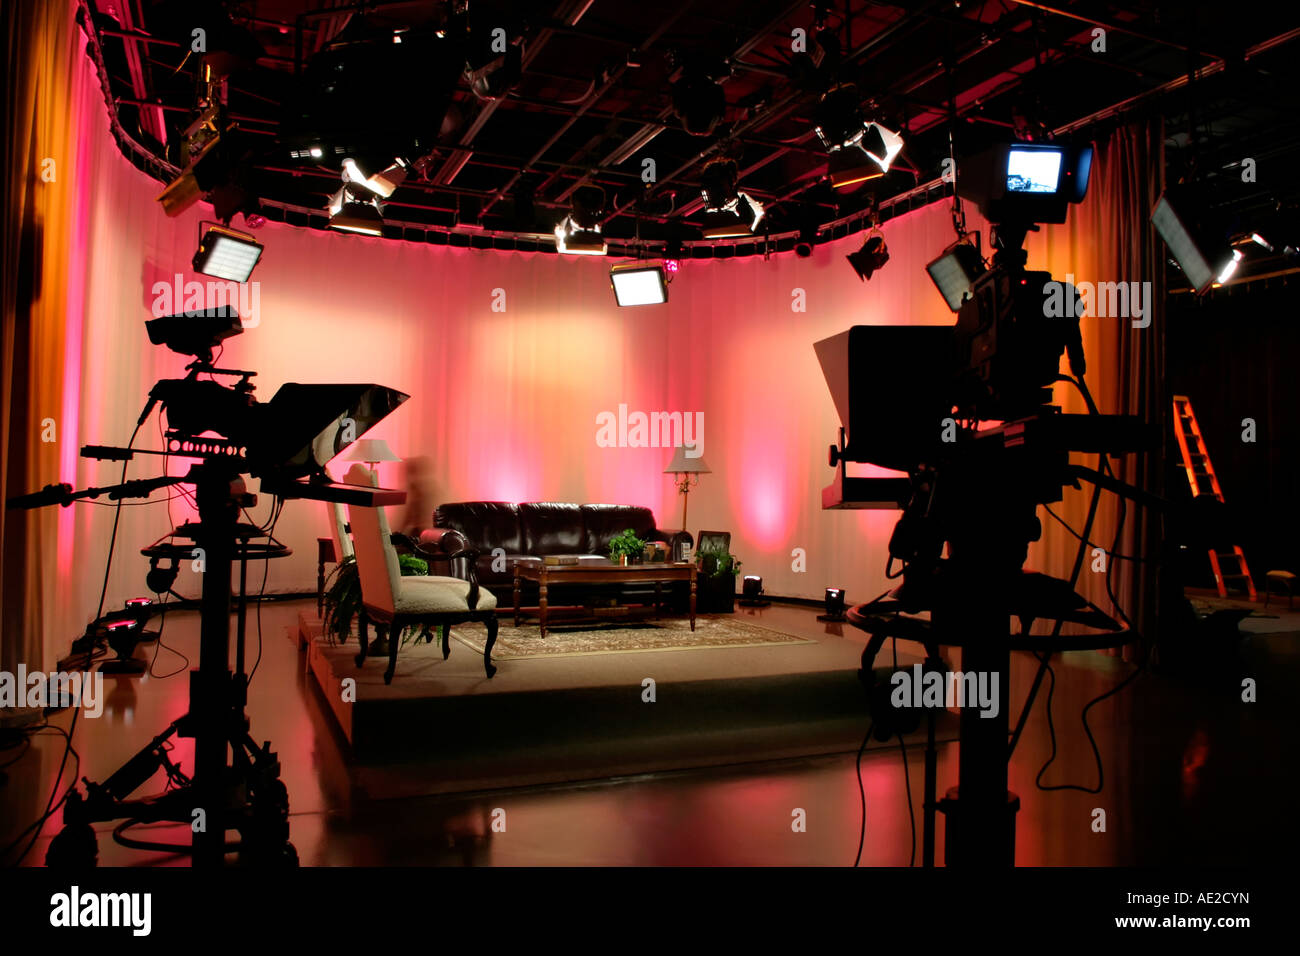 Estudio de producción de televisión y cámaras con una colorida decoración iluminada Foto de stock